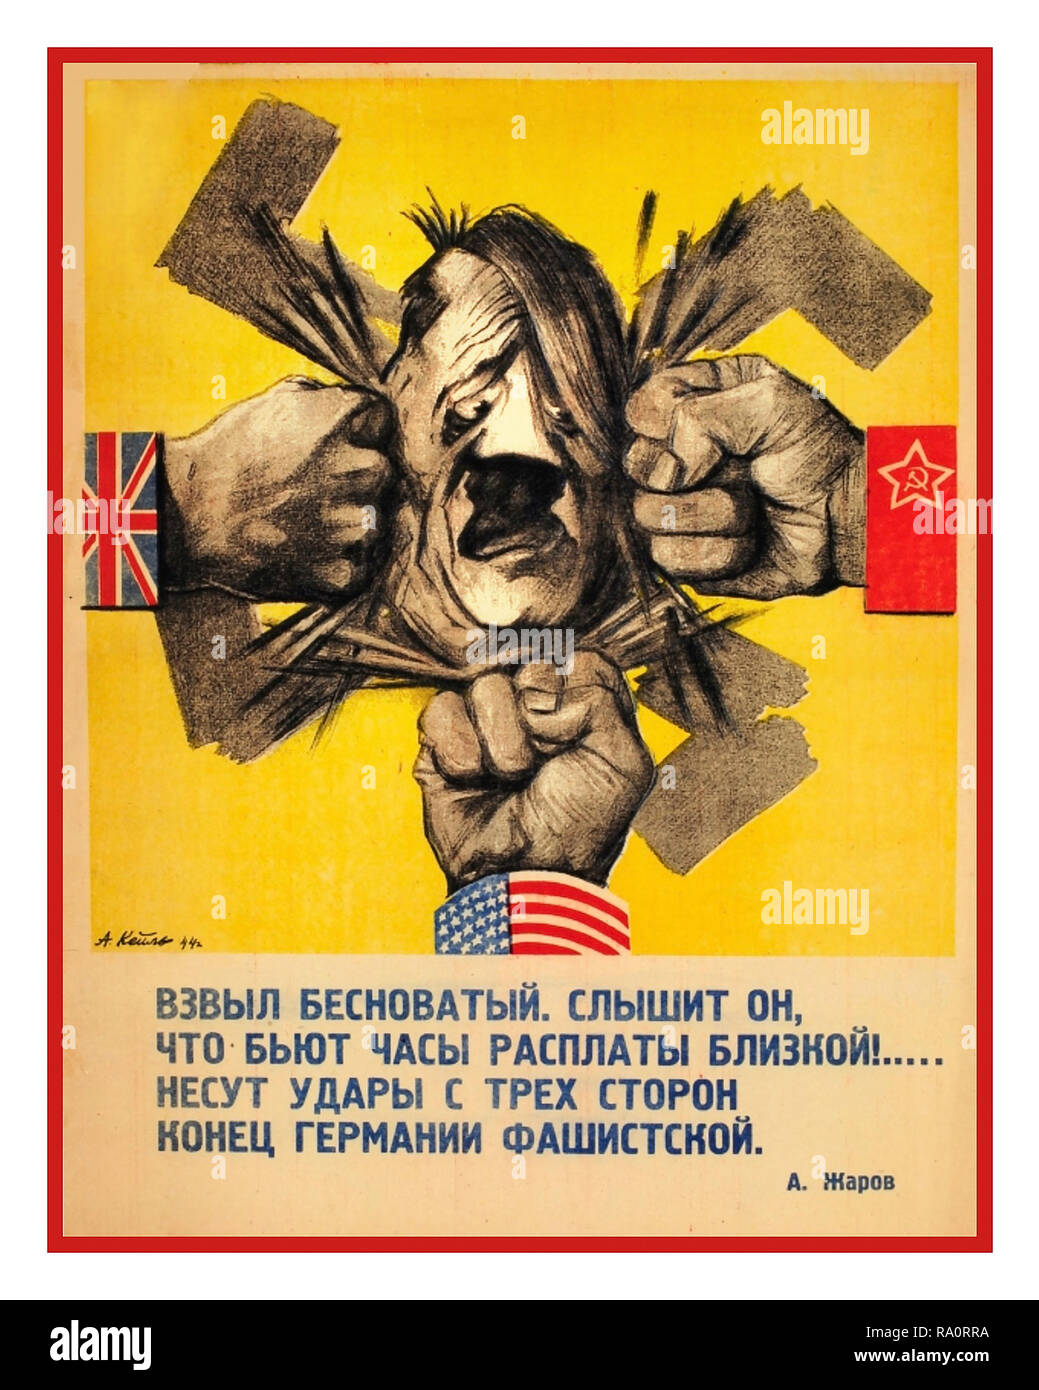 Vintage WW2 1940 Russie soviétique URSS propagande affiche présentant caricature de nazi Adolf Hitler étant frappé de tous les côtés par les poings portant les drapeaux de la Grande Alliance: Royaume-Uni Etats-Unis et Russie soviétique les alliés de la Seconde Guerre mondiale Banque D'Images